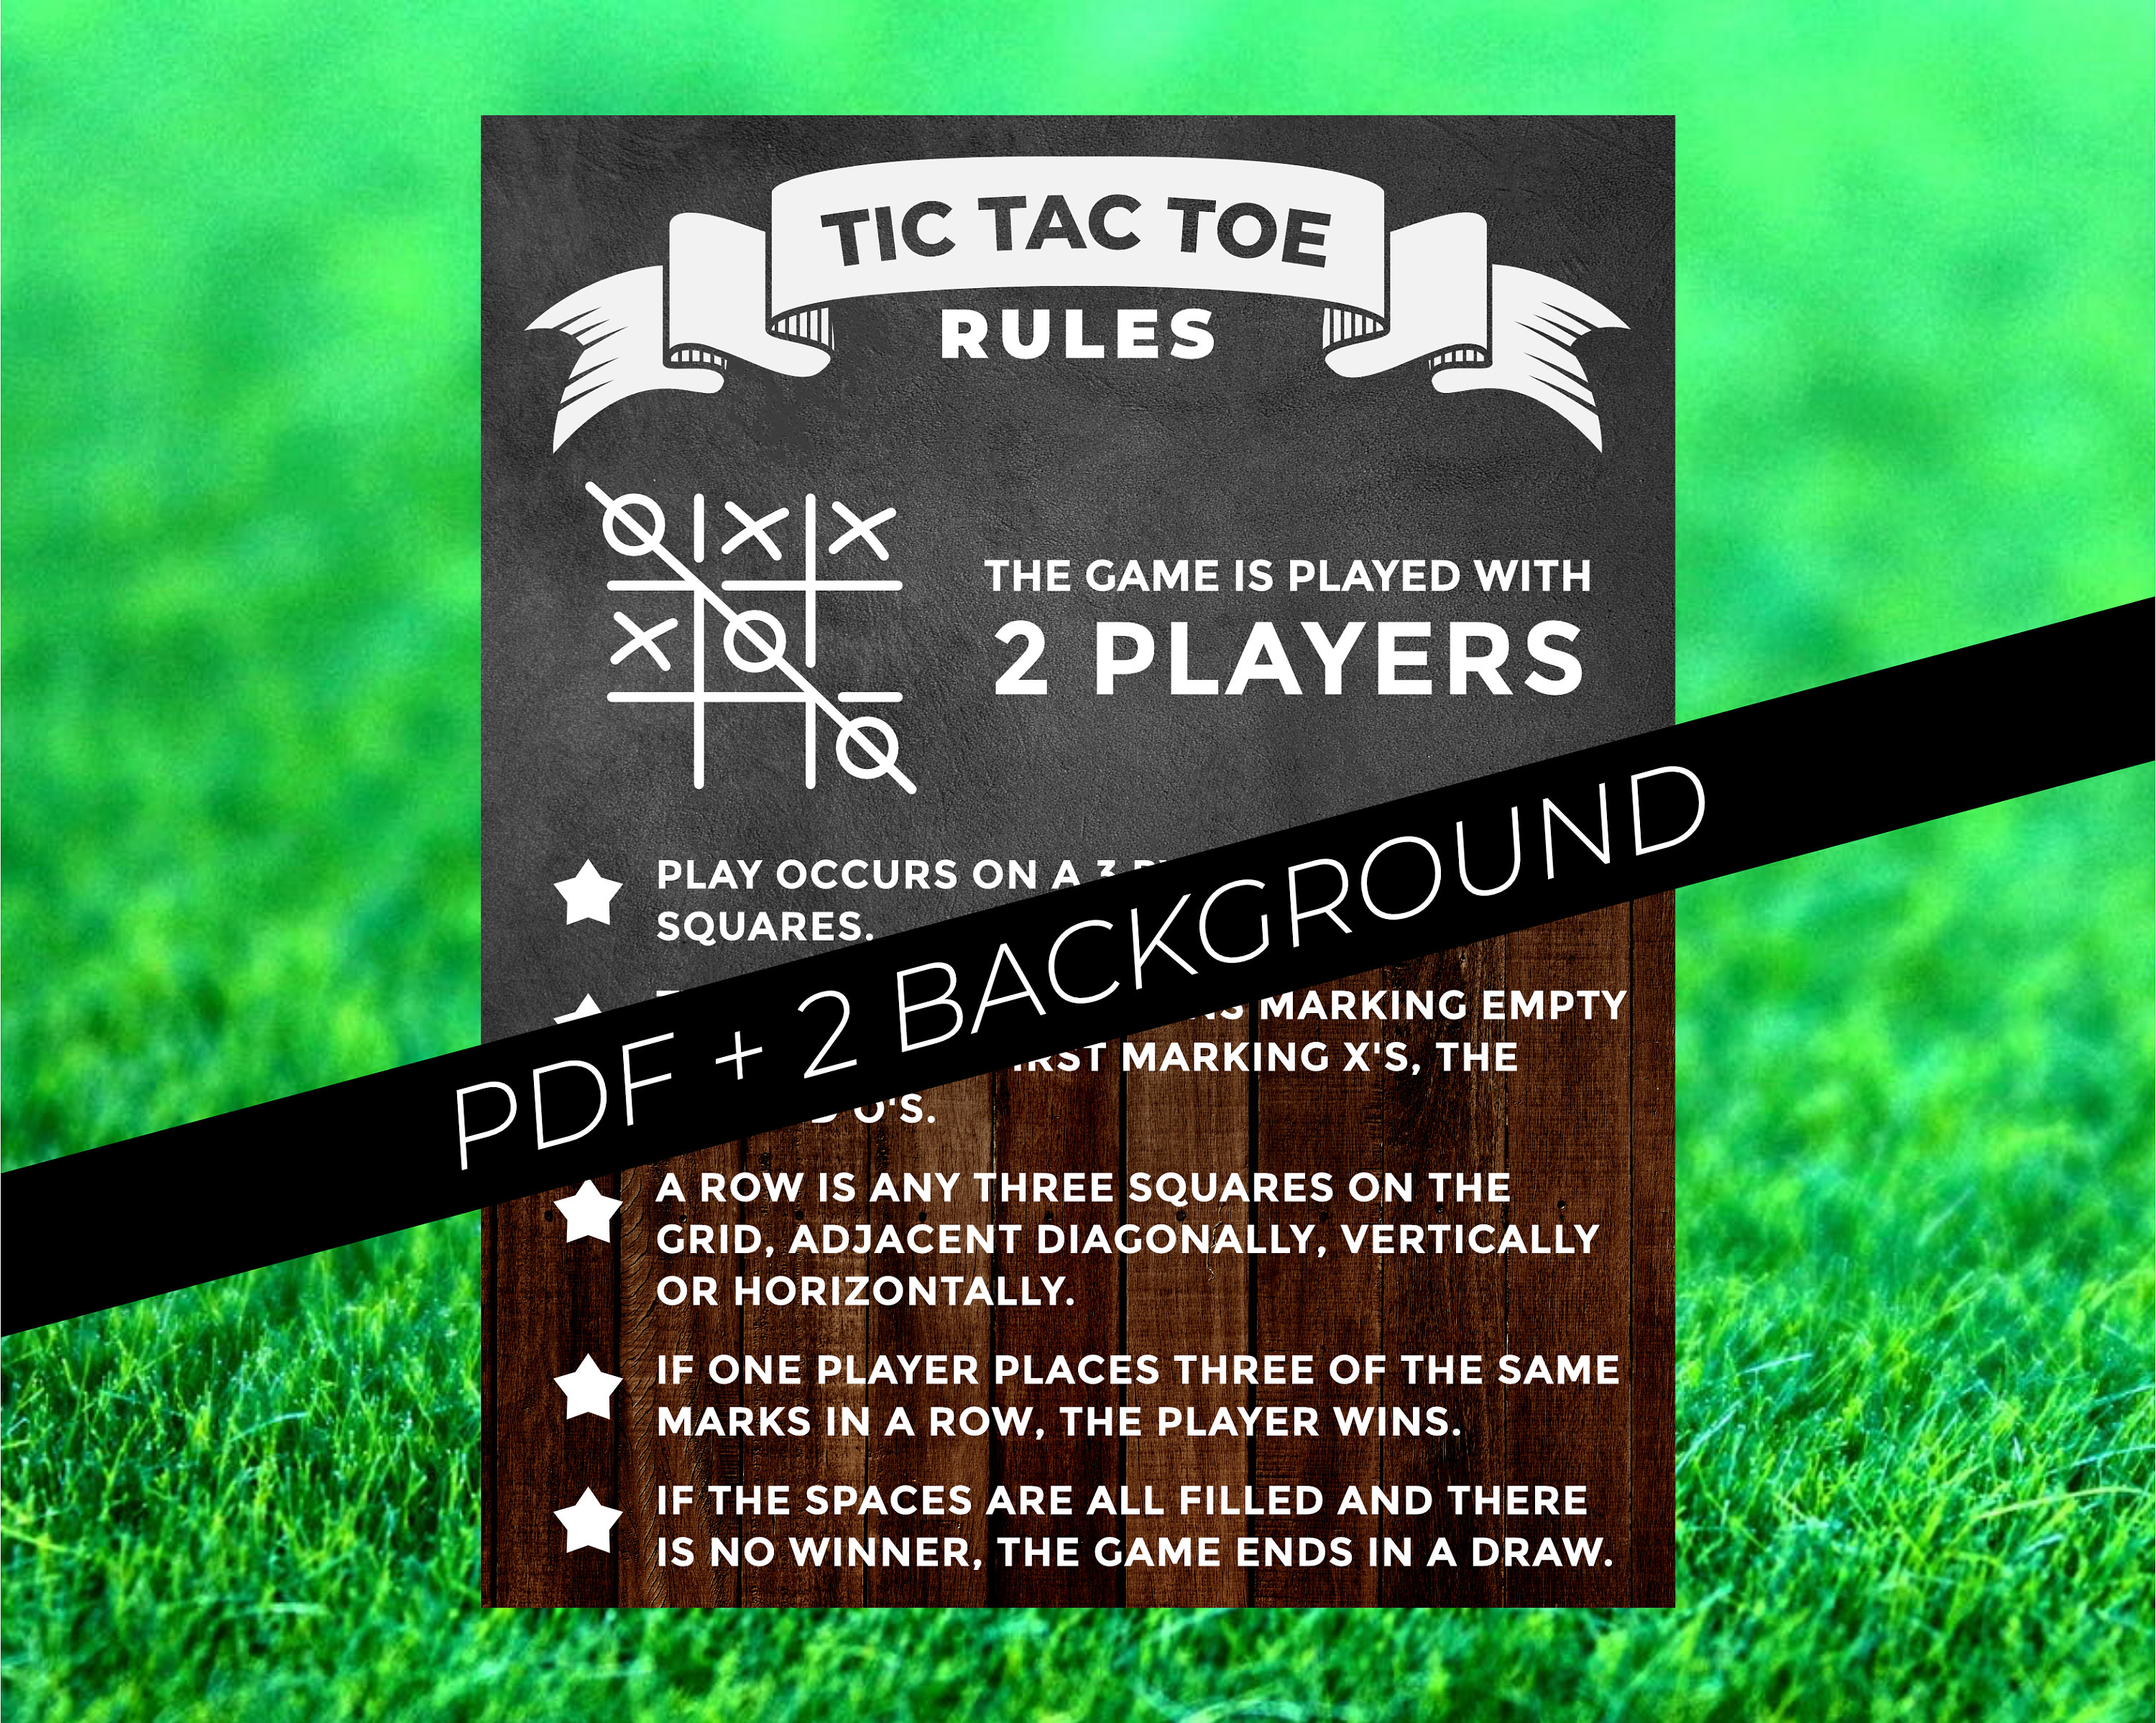 Tic tac toe Poster by Vectorqueen